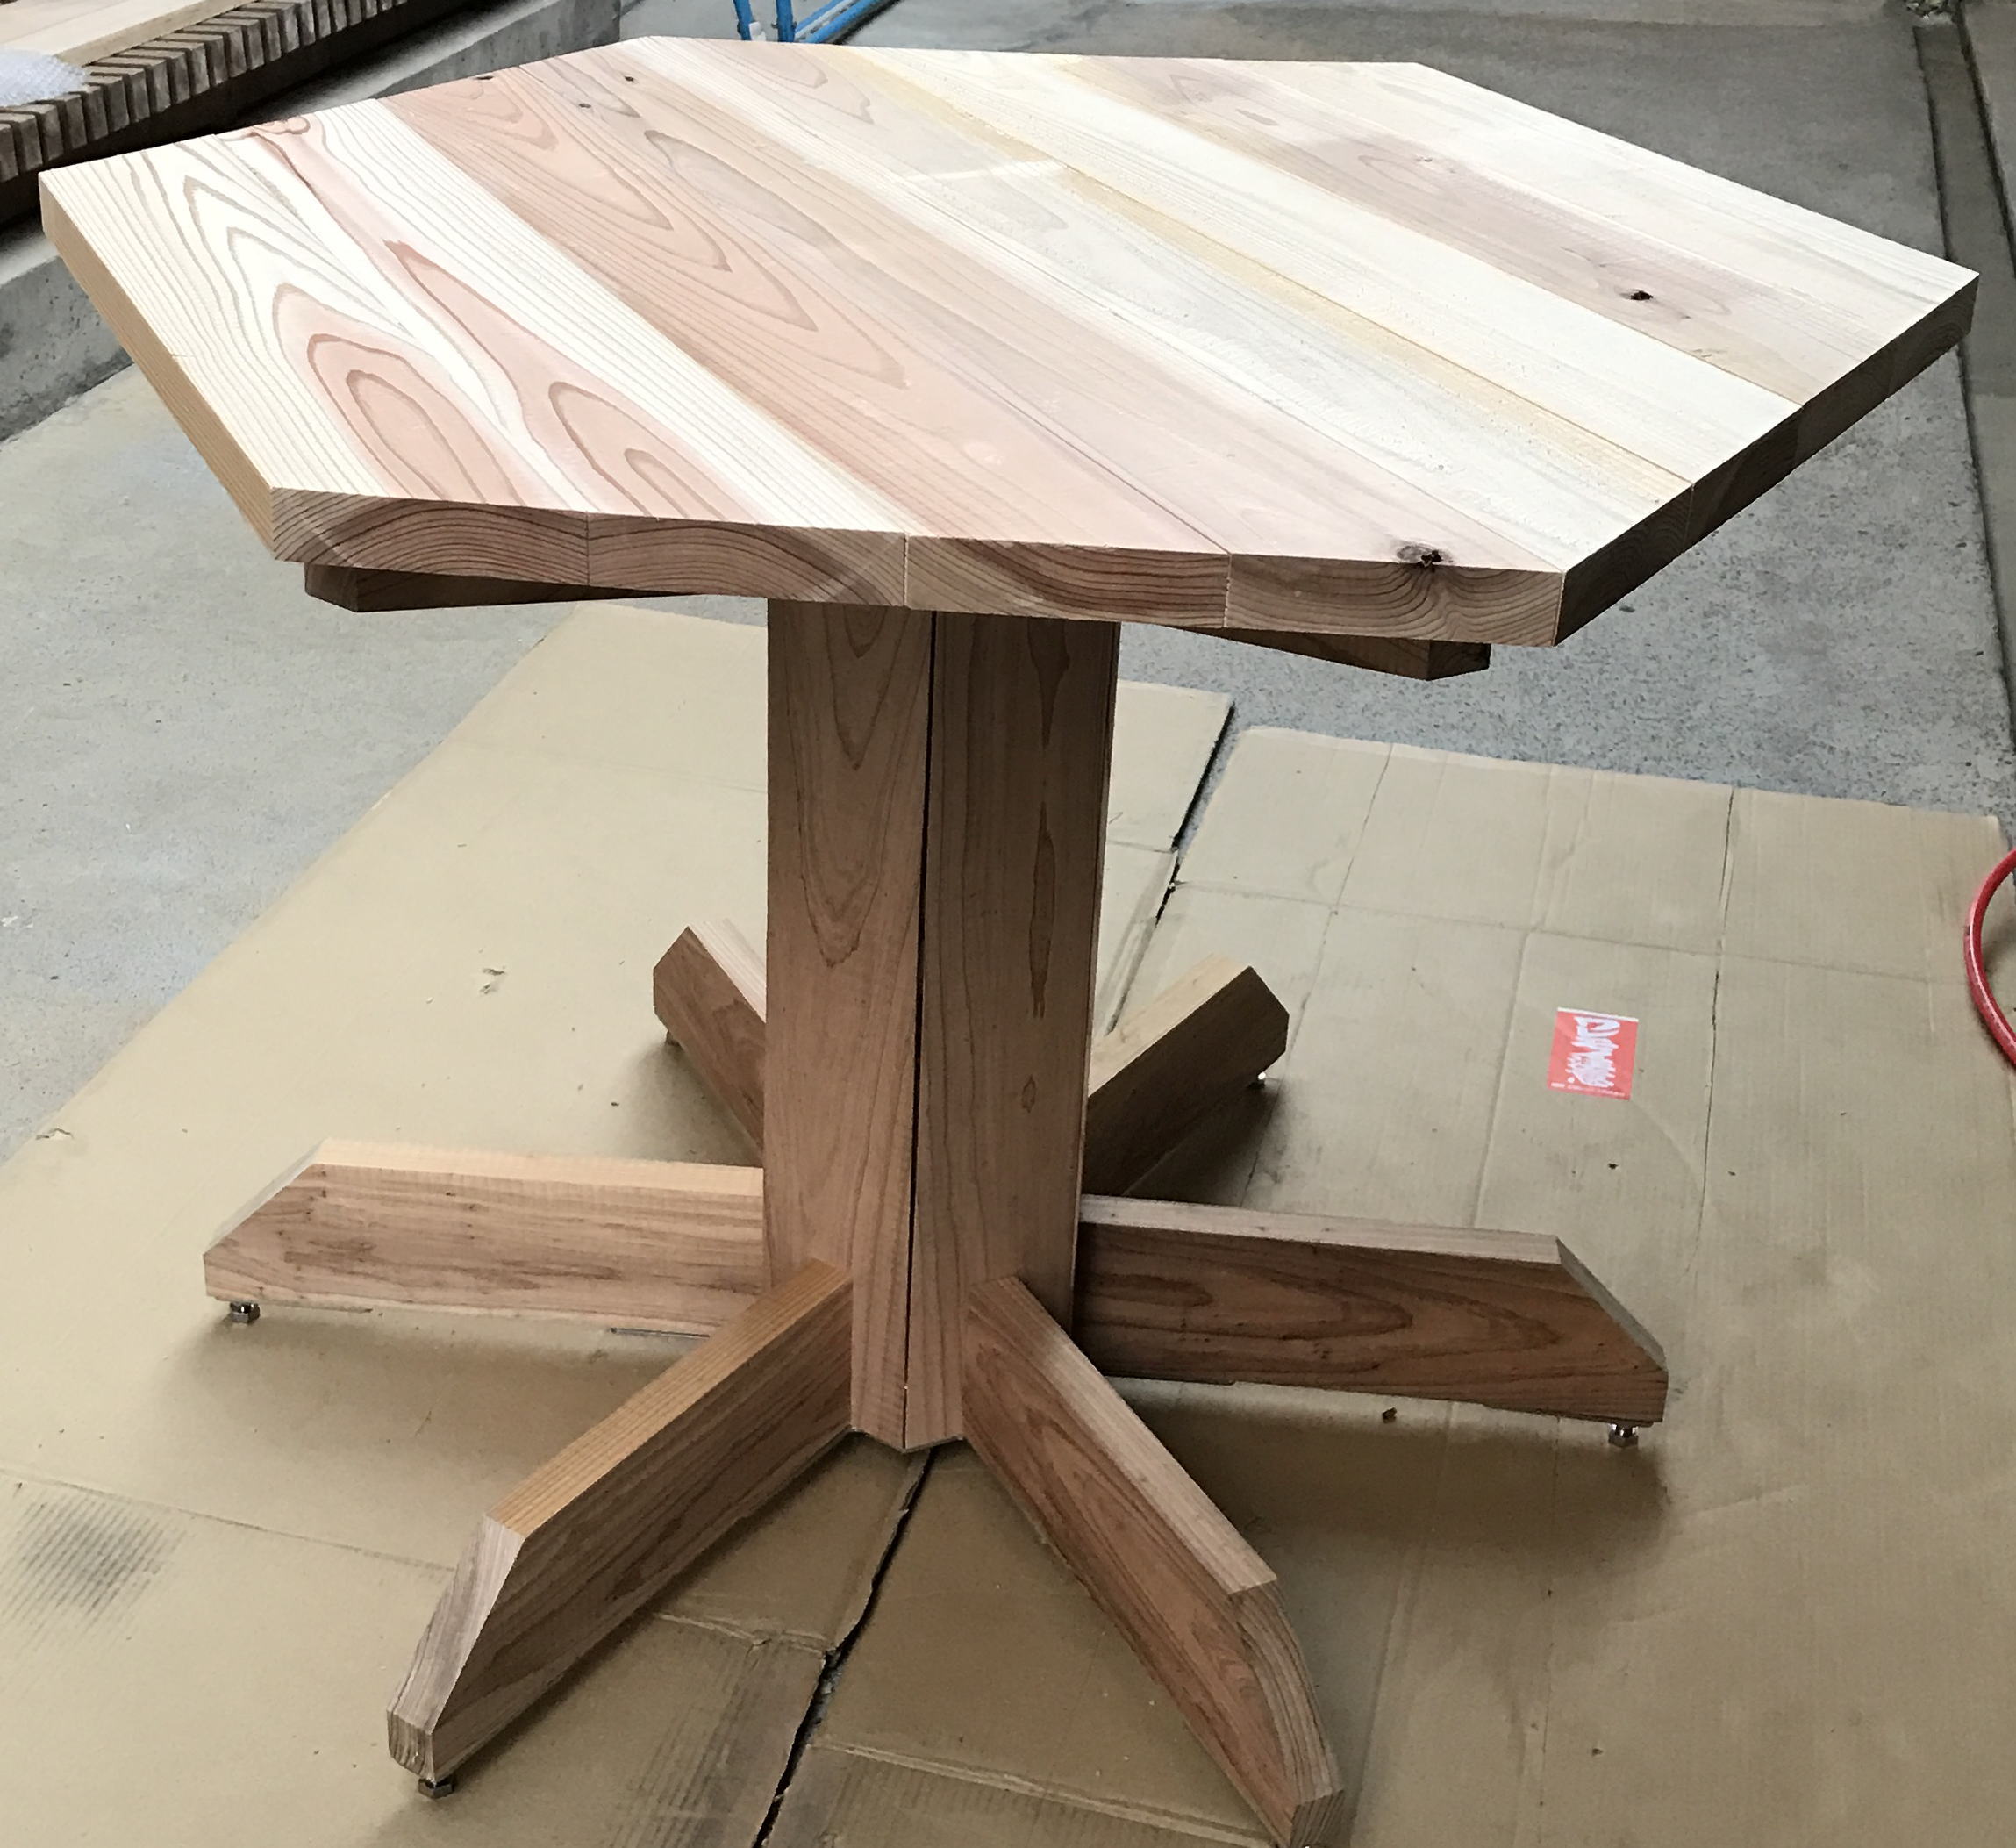 「ヘキサテーブル製作」・いっしょに製作・製作実習